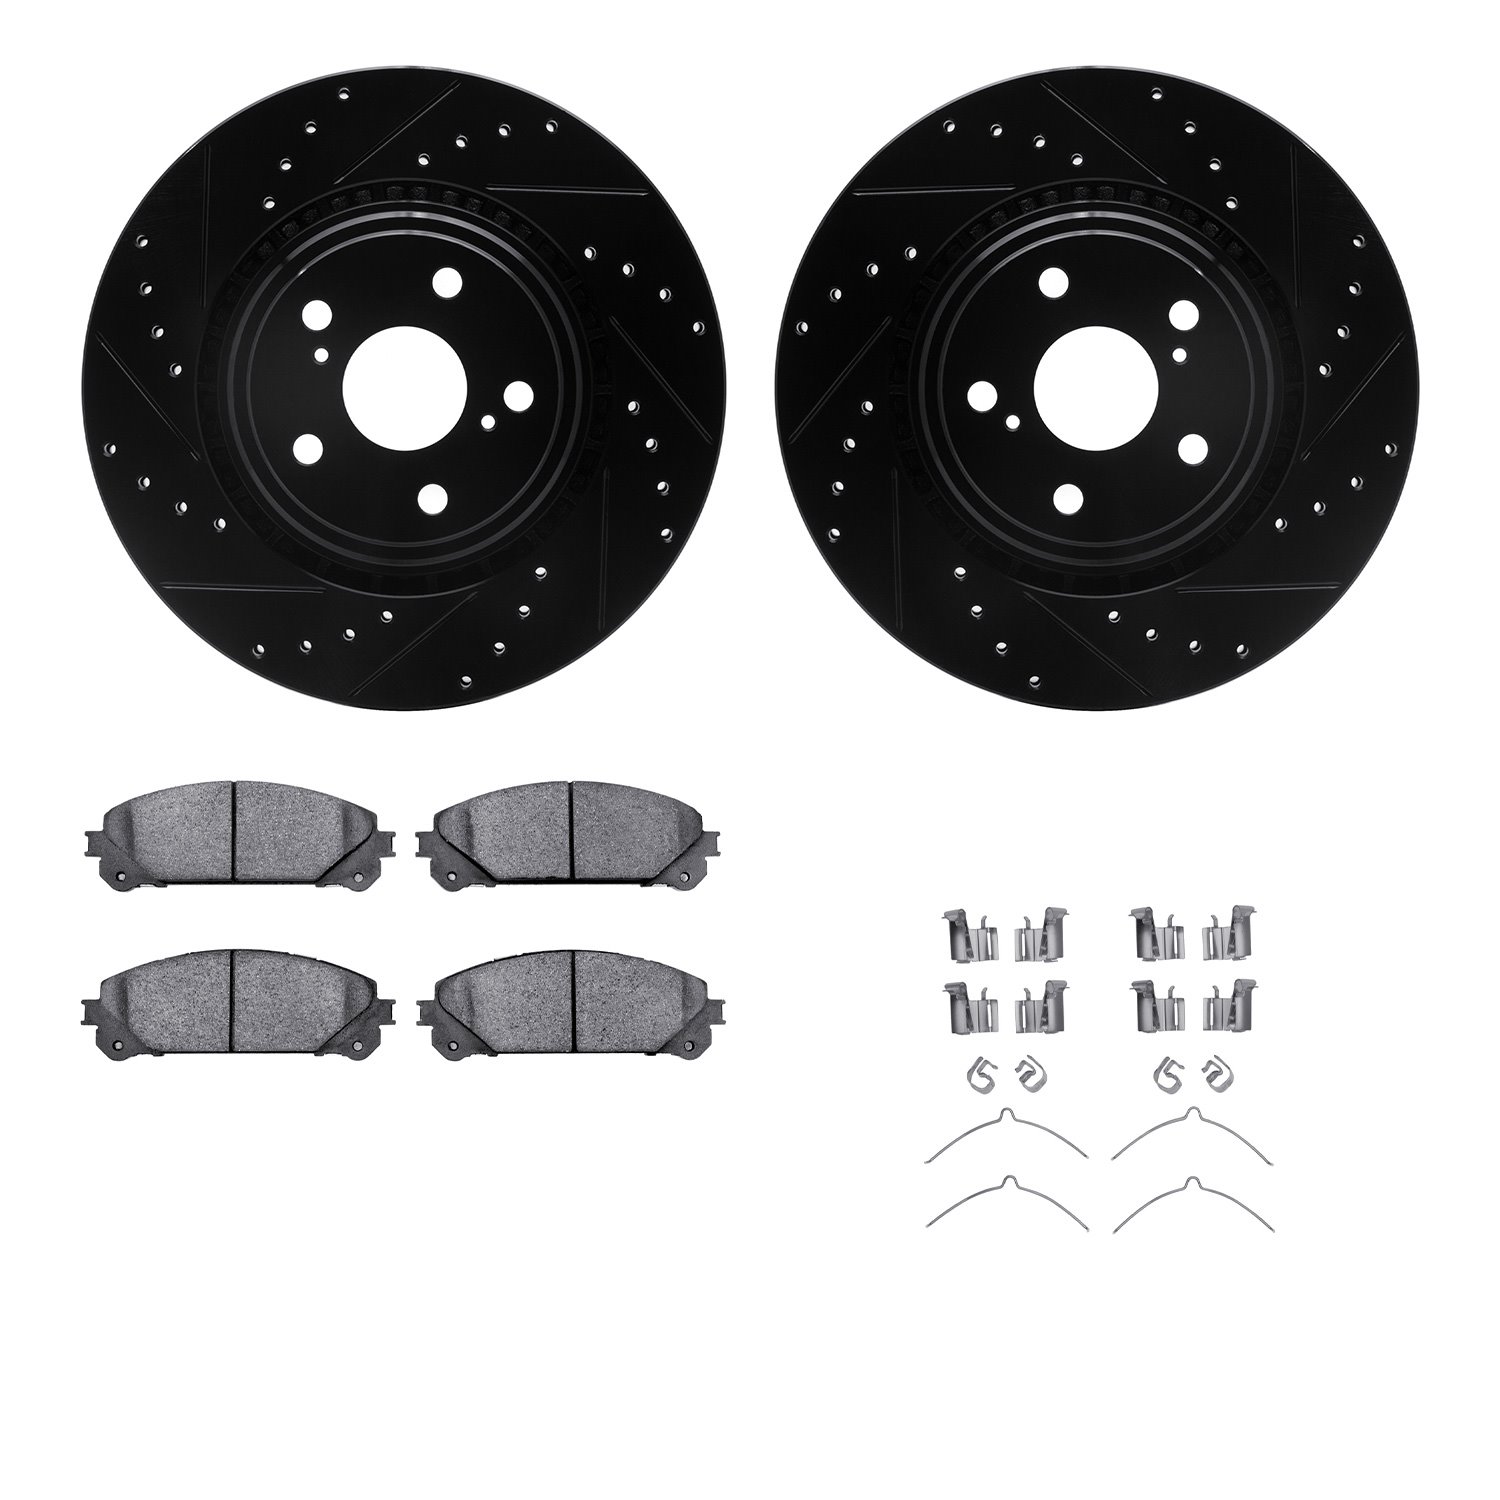 8312-76164 Drilled/Slotted Brake Rotors with 3000-Series Ceramic Brake Pads Kit & Hardware [Black], 2008-2021 Lexus/Toyota/Scion